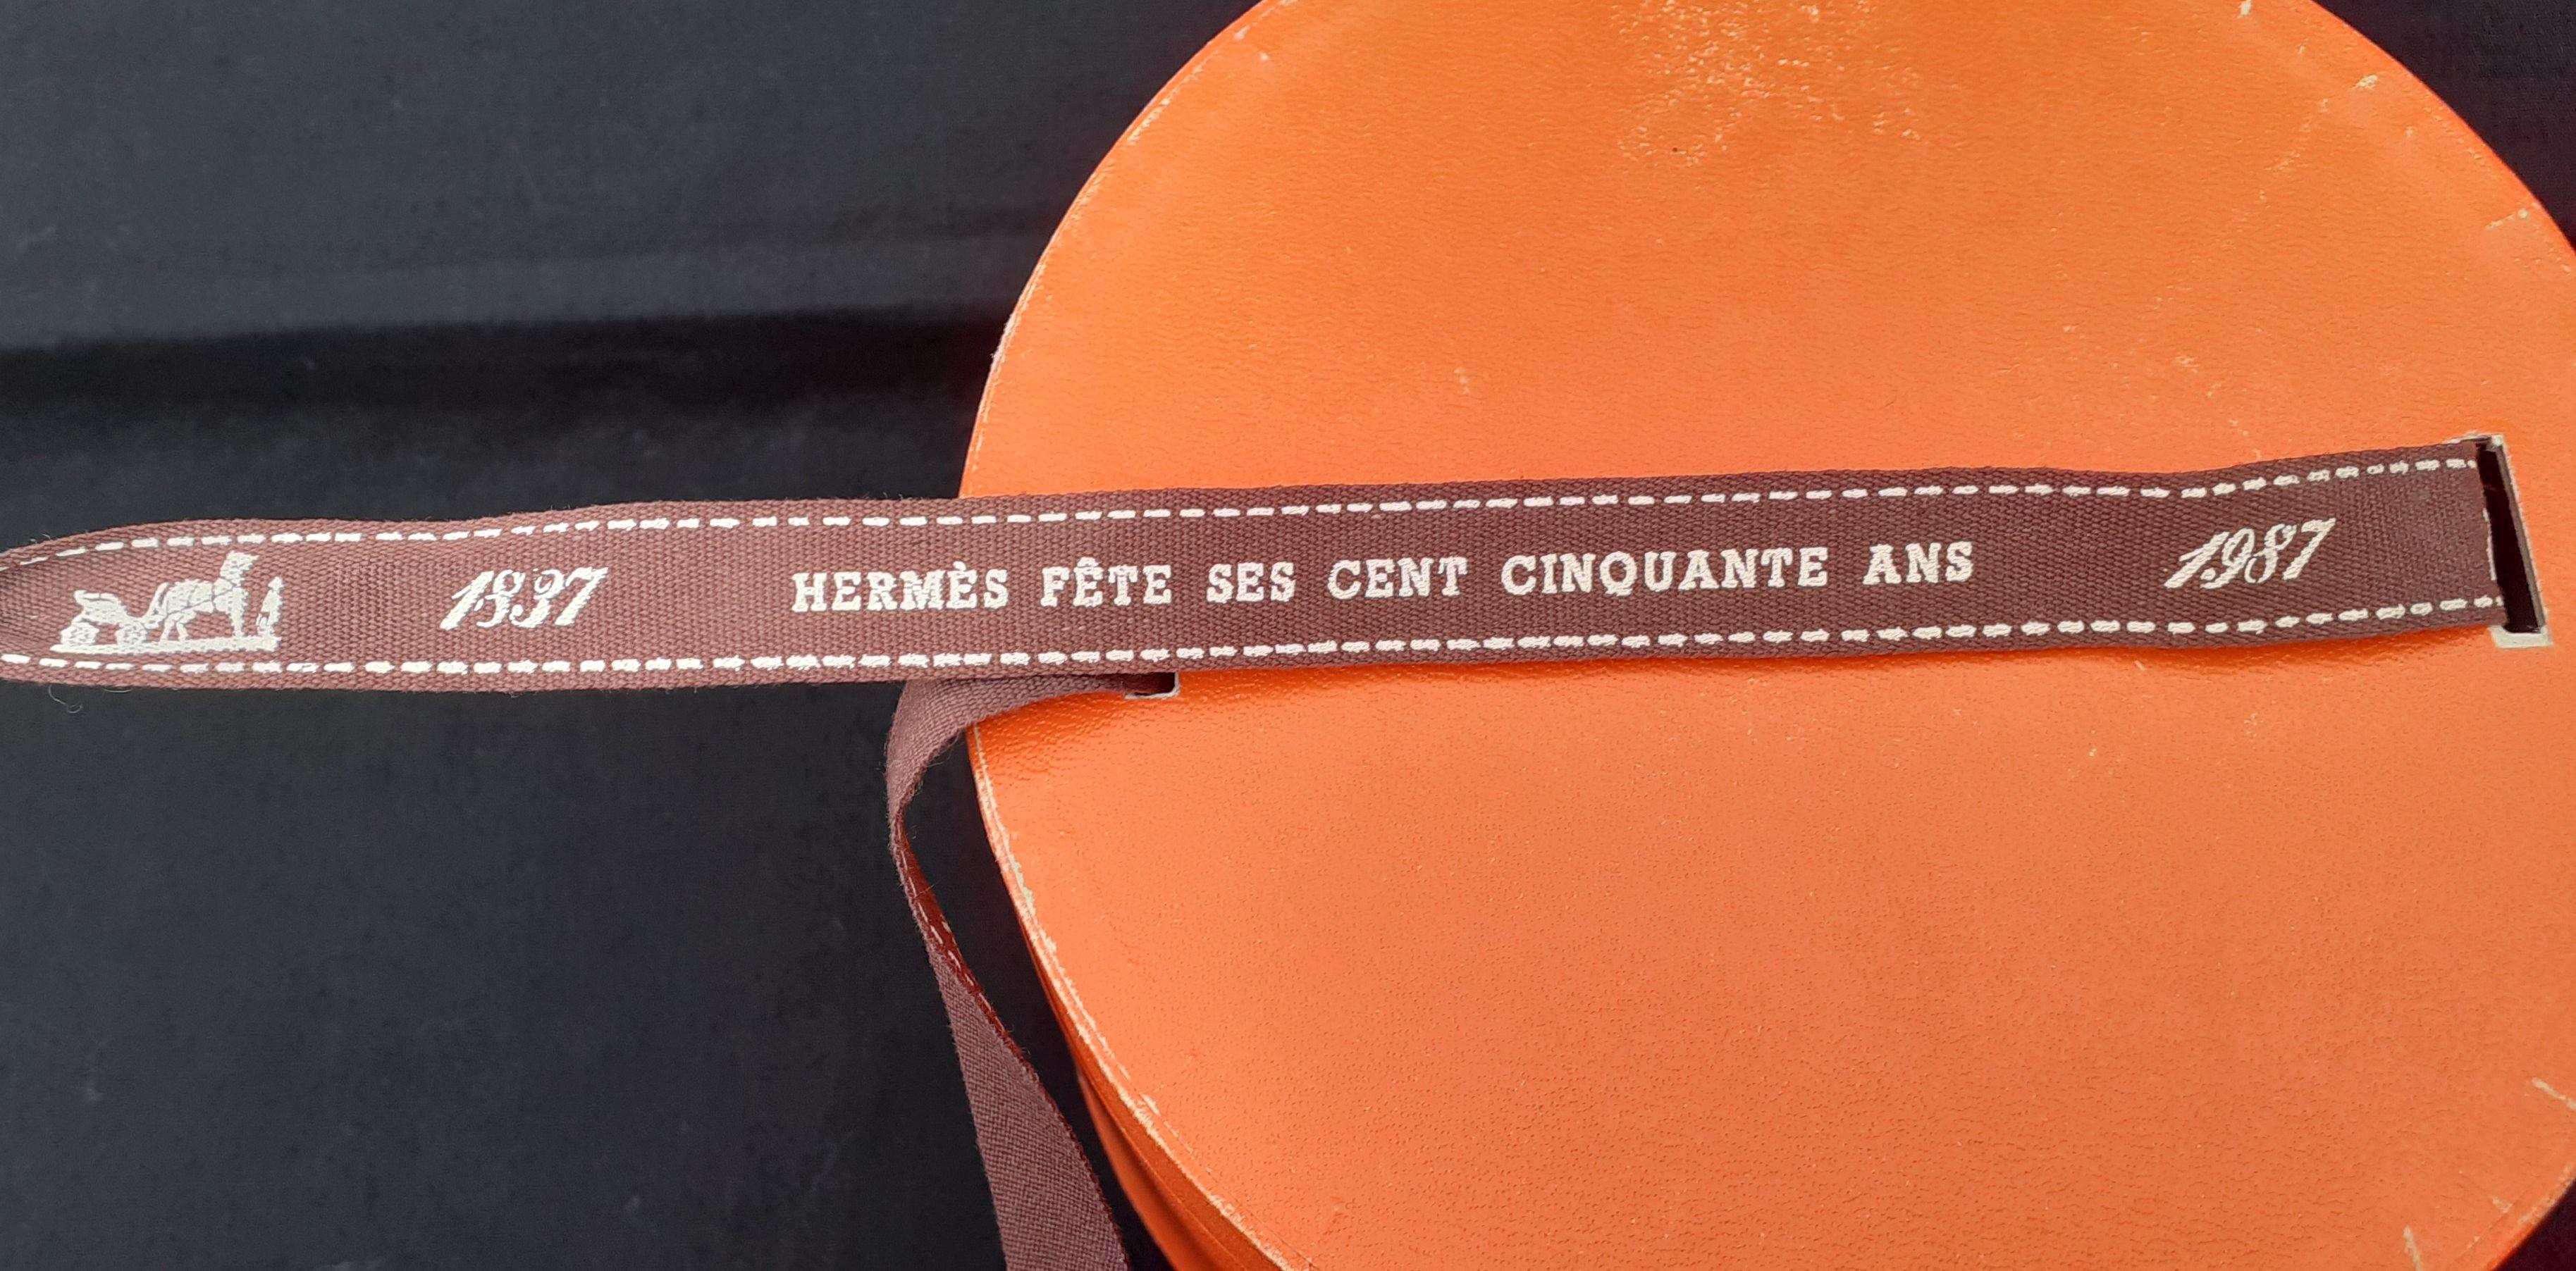 Hermès Hermès feiert sein 150-jähriges Bestehen mit Figuren-Reiterpferd 1837-1987 im Angebot 8